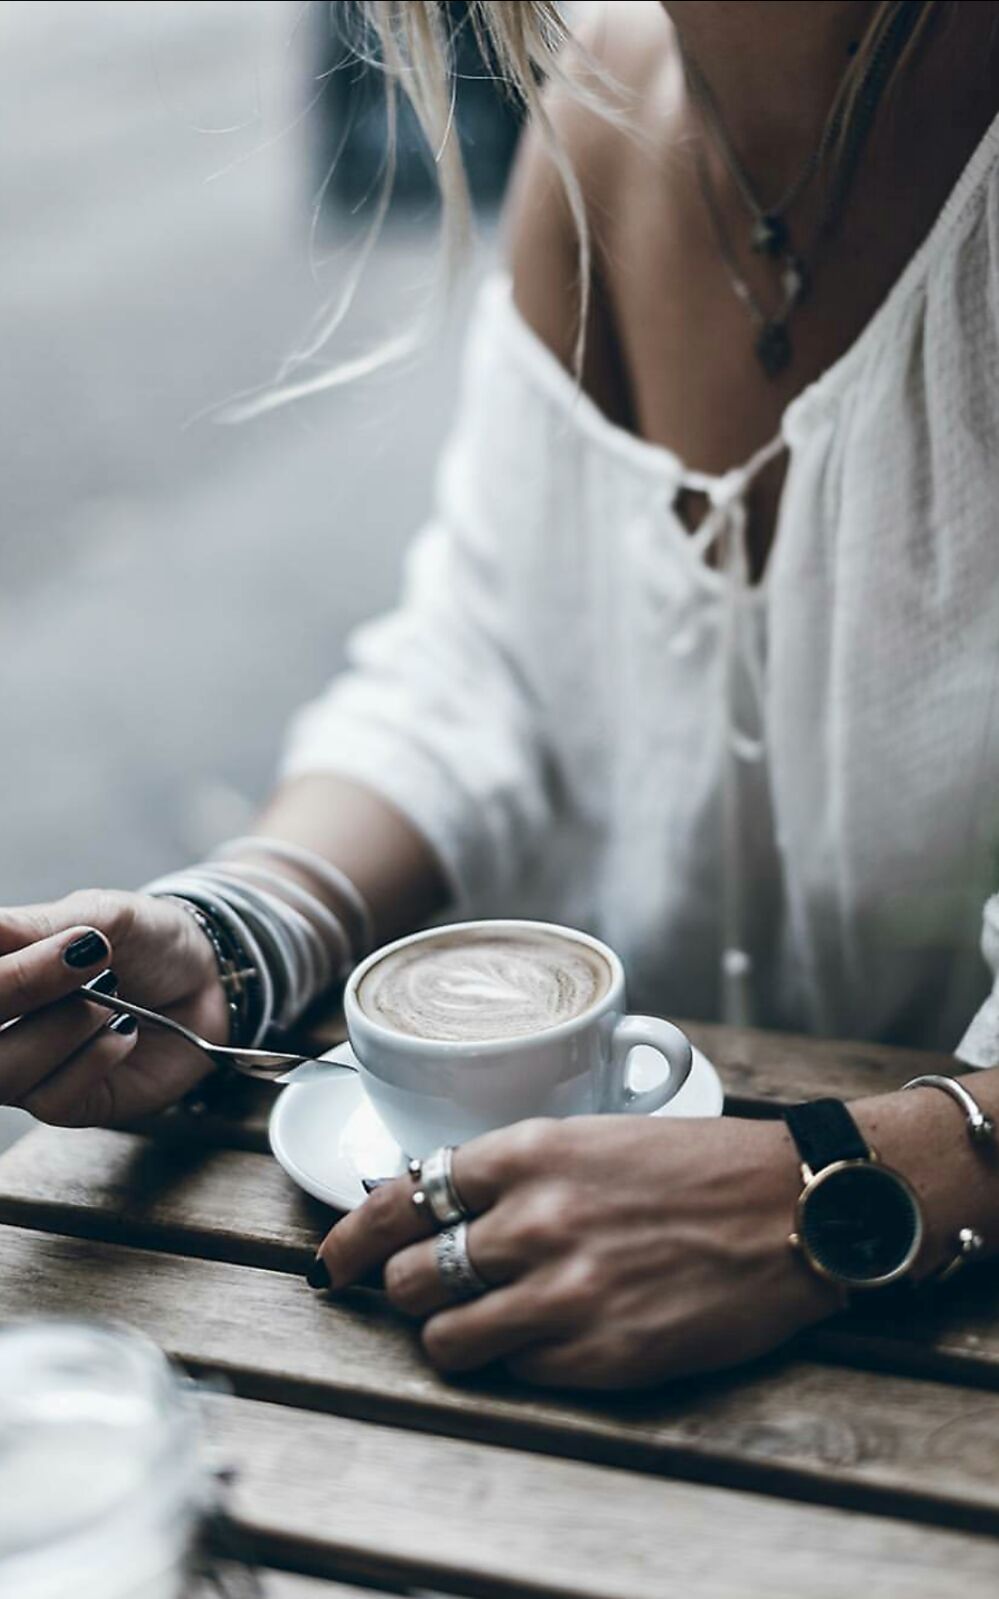 Фото девушек с кофе. Девушка с кофе. Девушка с кофе в руках. Девушка с чашкой кофе. Девушка пьет кофе.